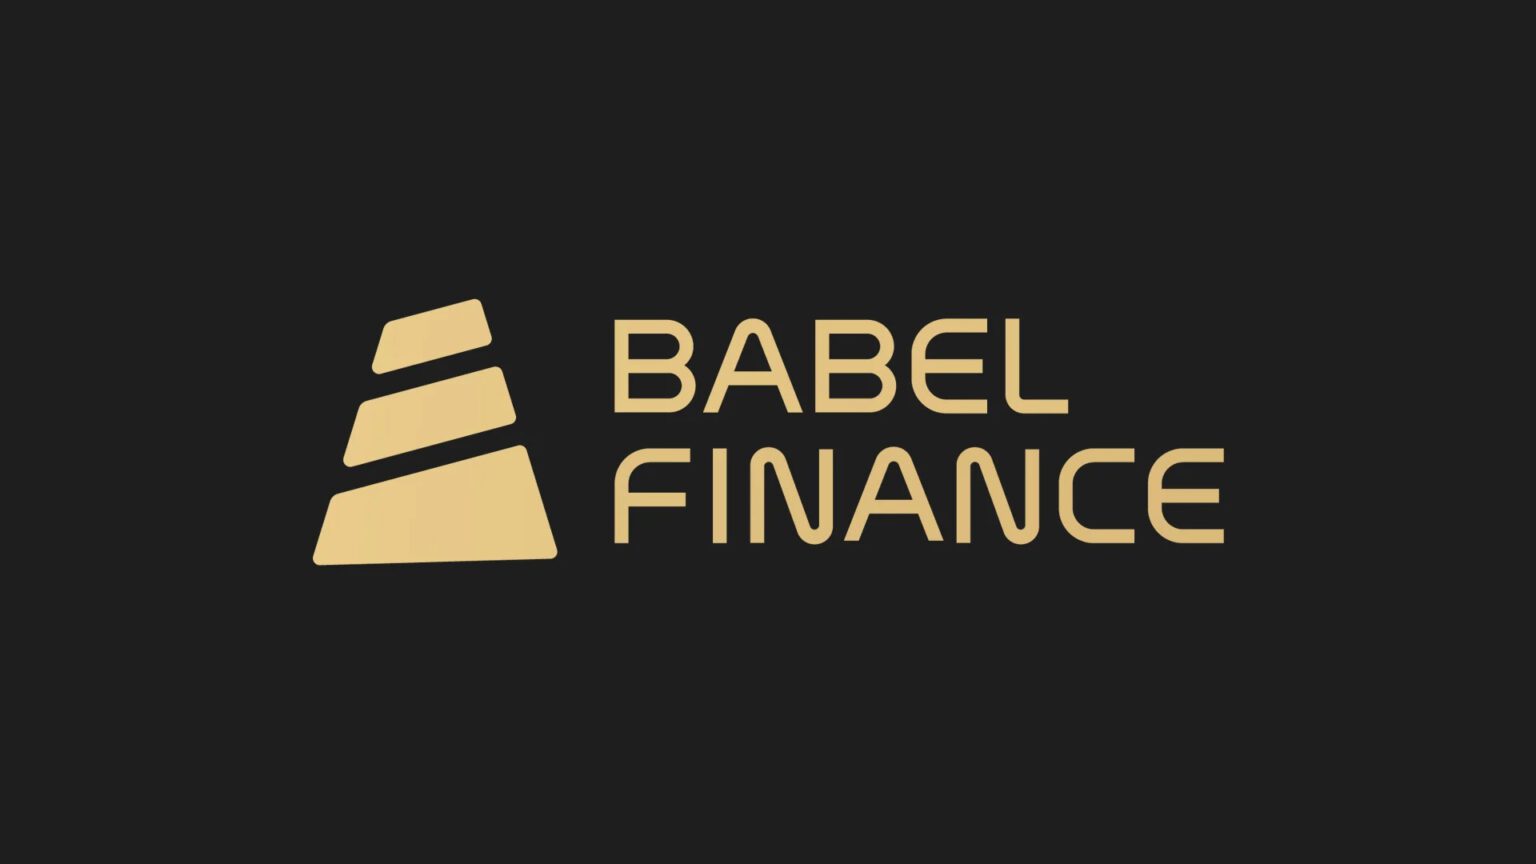 Babel-Finance-1536x864.jpg